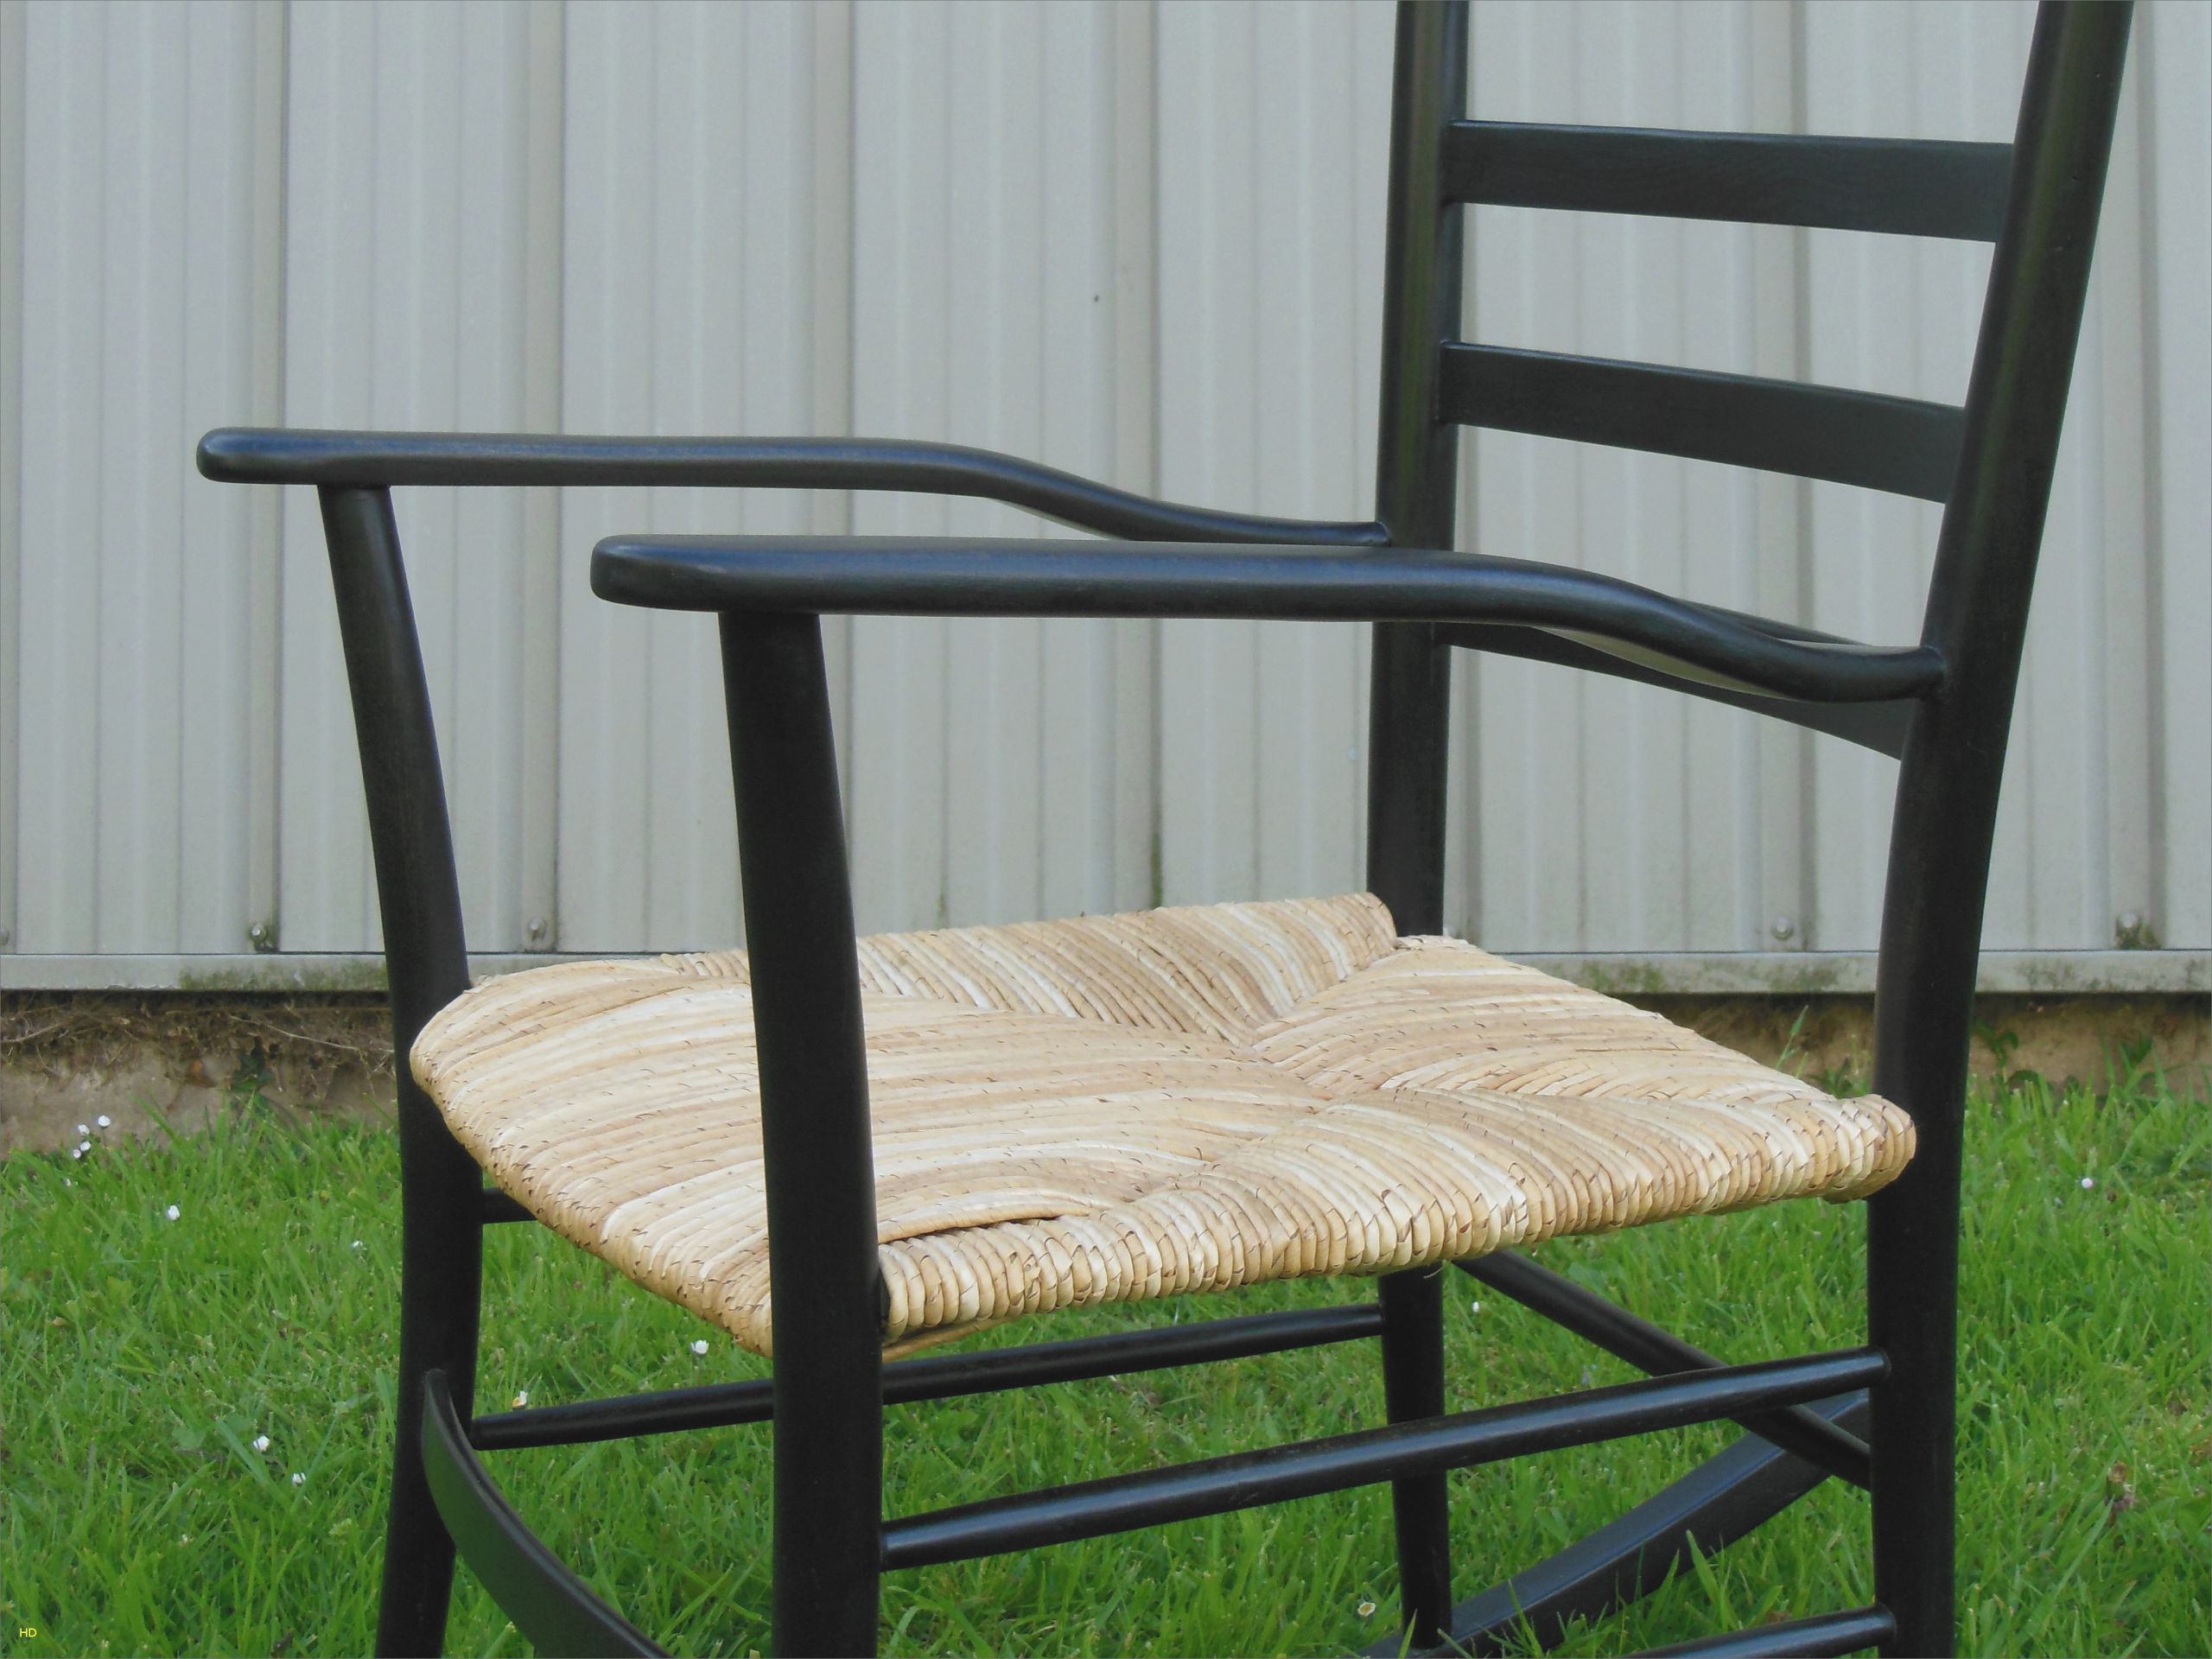 table et fauteuil de jardin fauteuil douche beau castorama chaise nouveau table jardin castorama of table et fauteuil de jardin